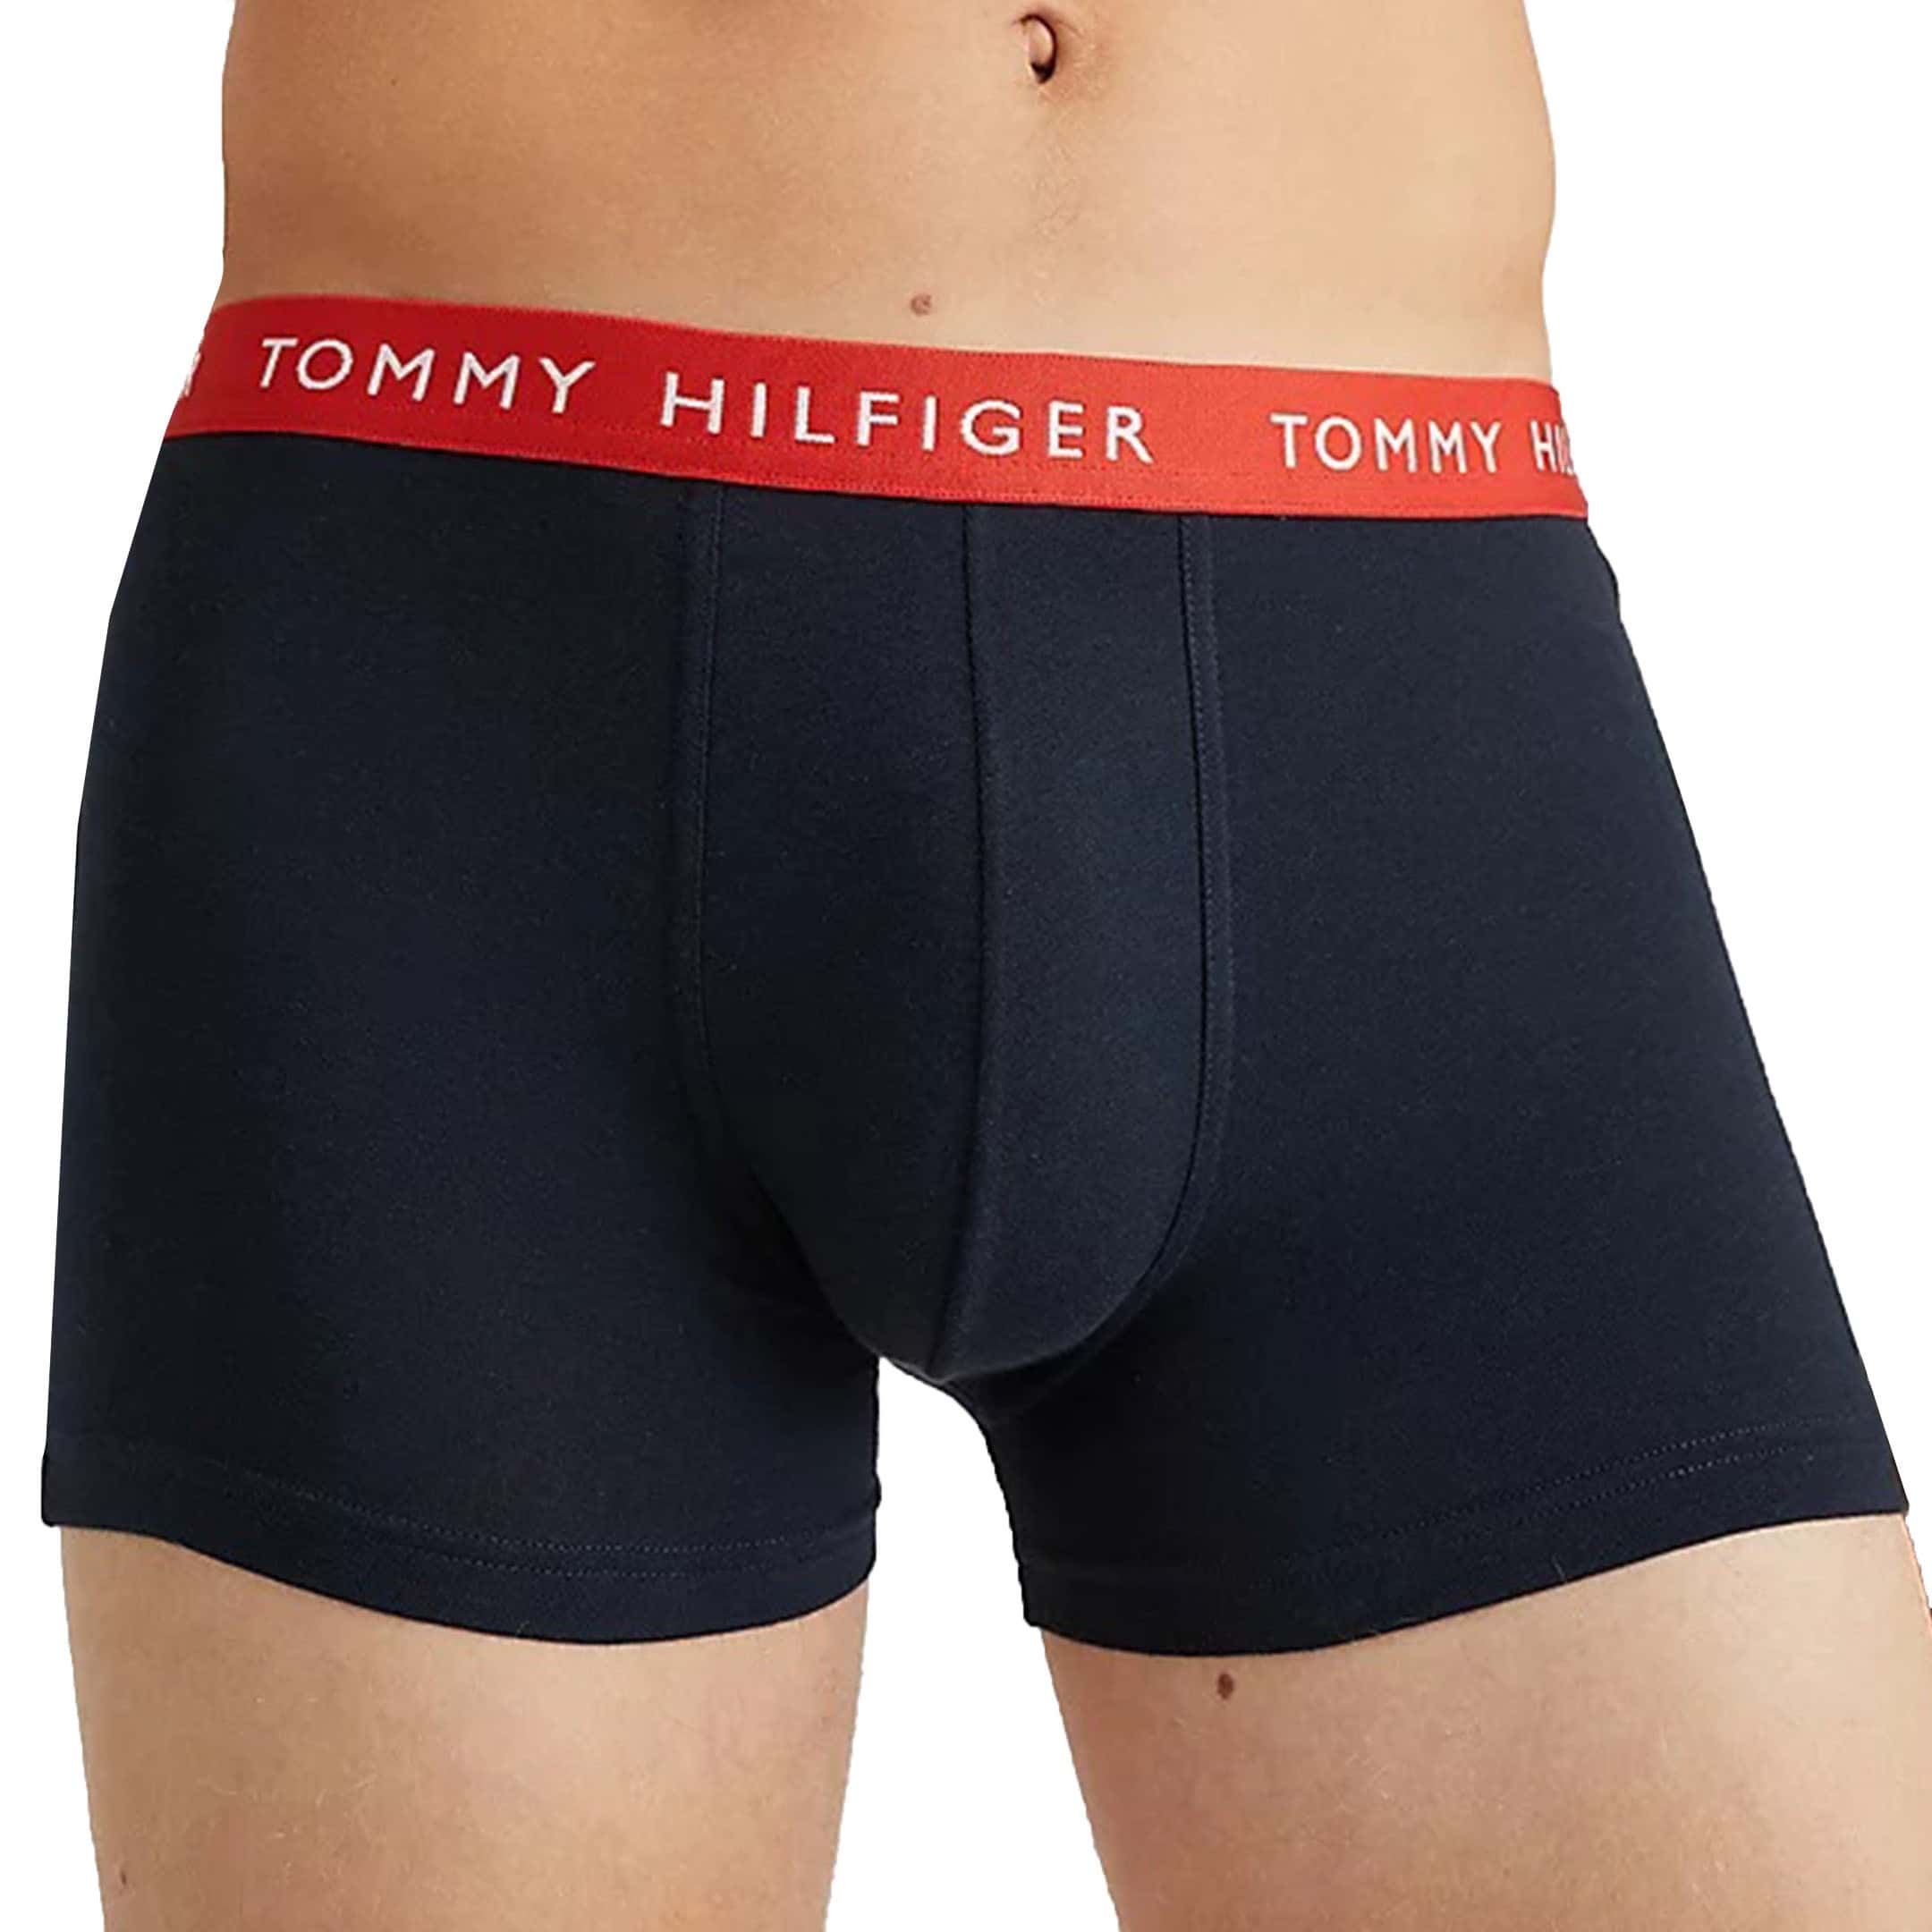 Tommy Hilfiger Underwear, Briefs, Trunks & Boxers